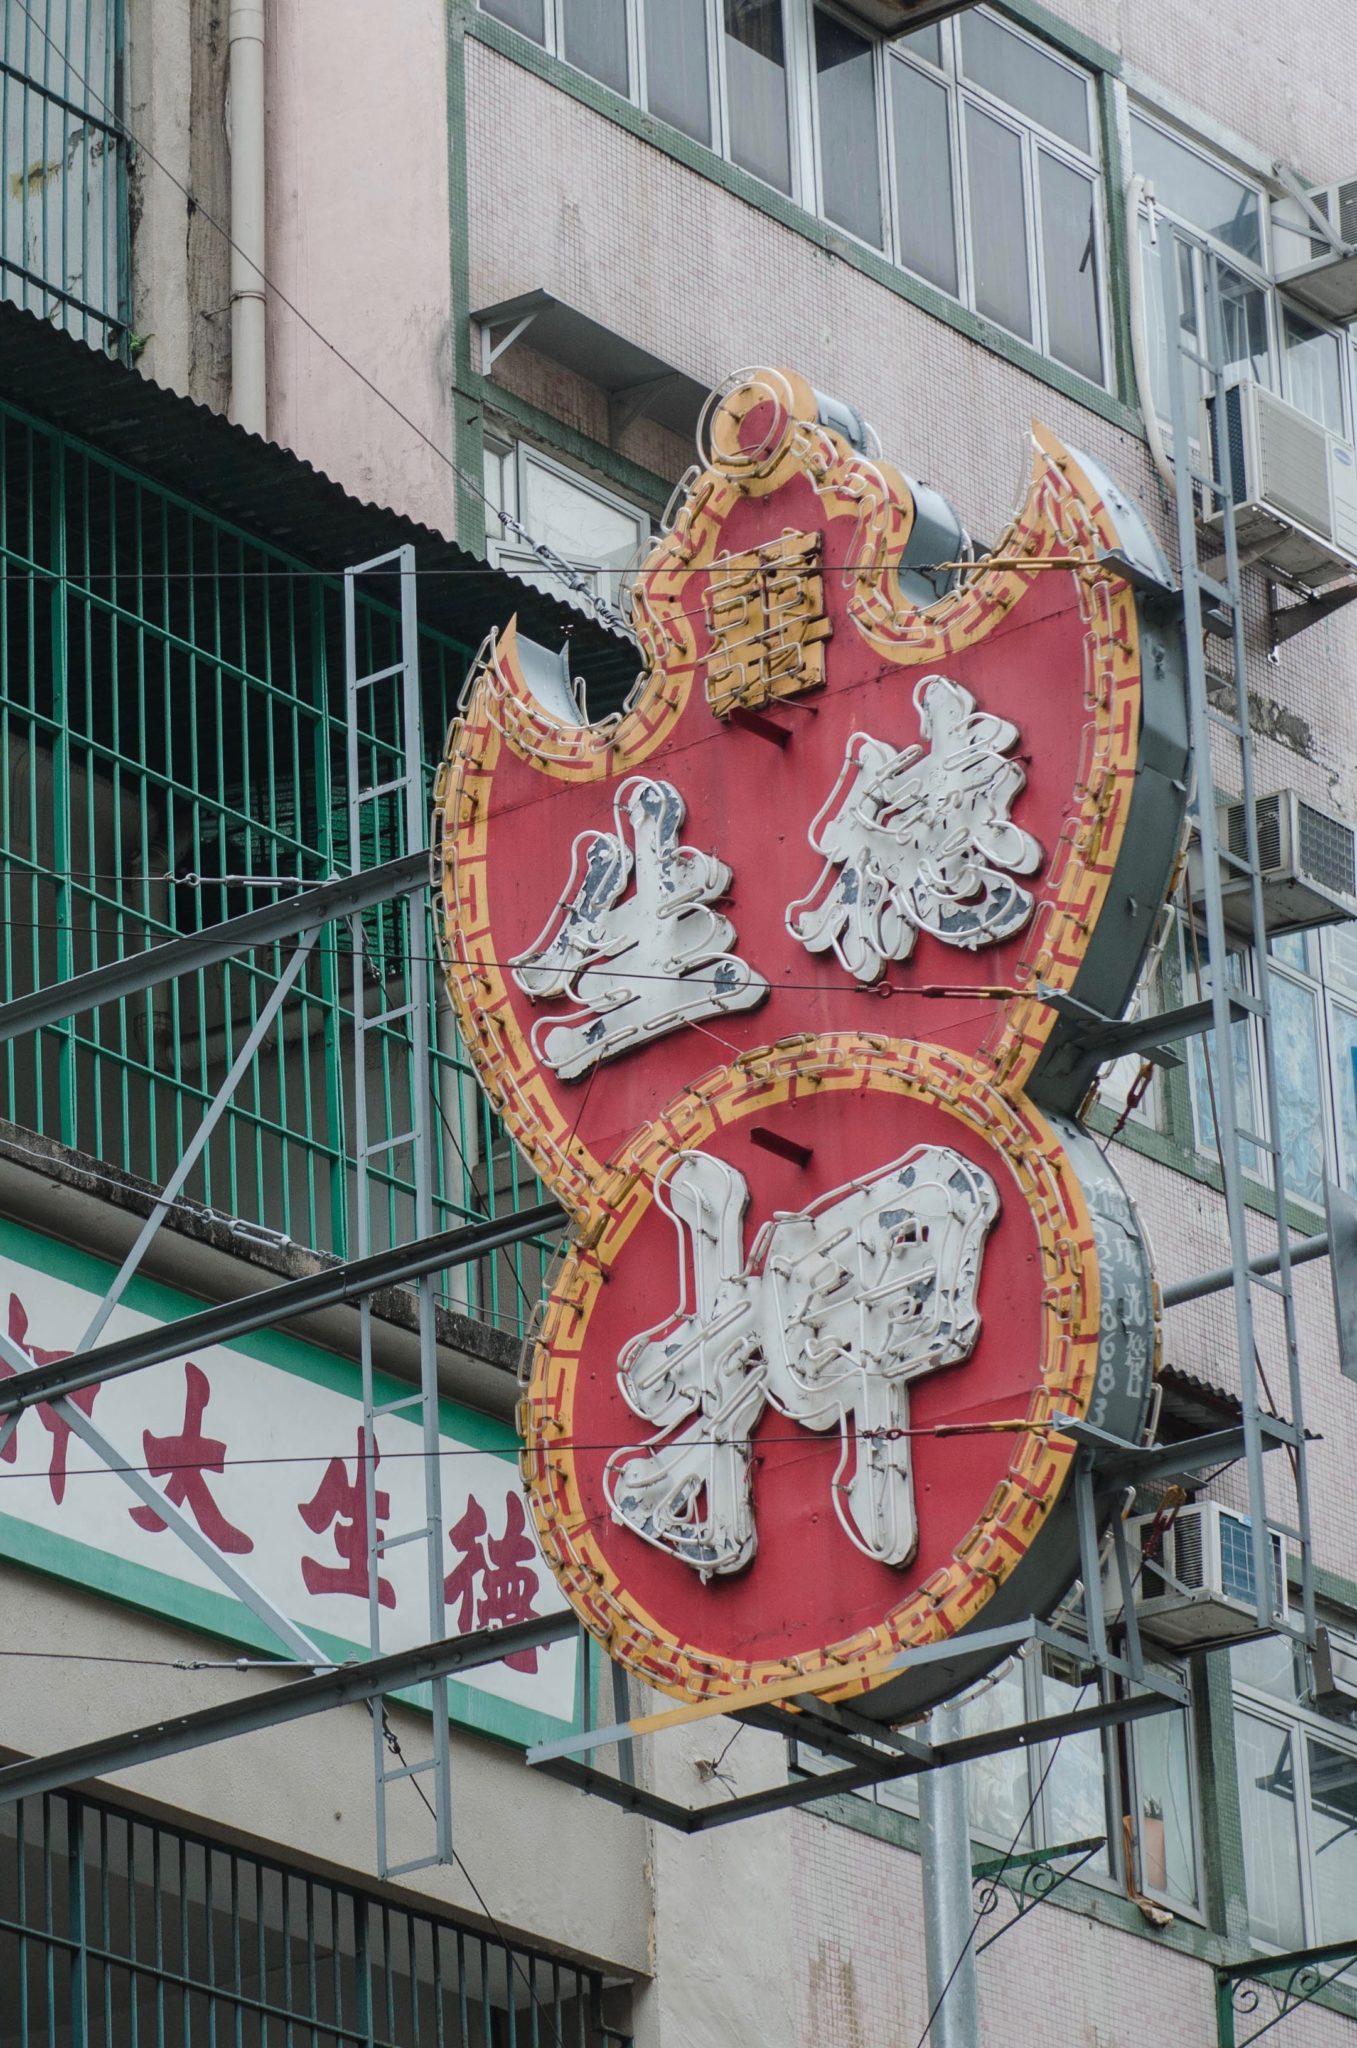 Die anderen Hongkong Highlights sind die vielen leuchtenden Schilder